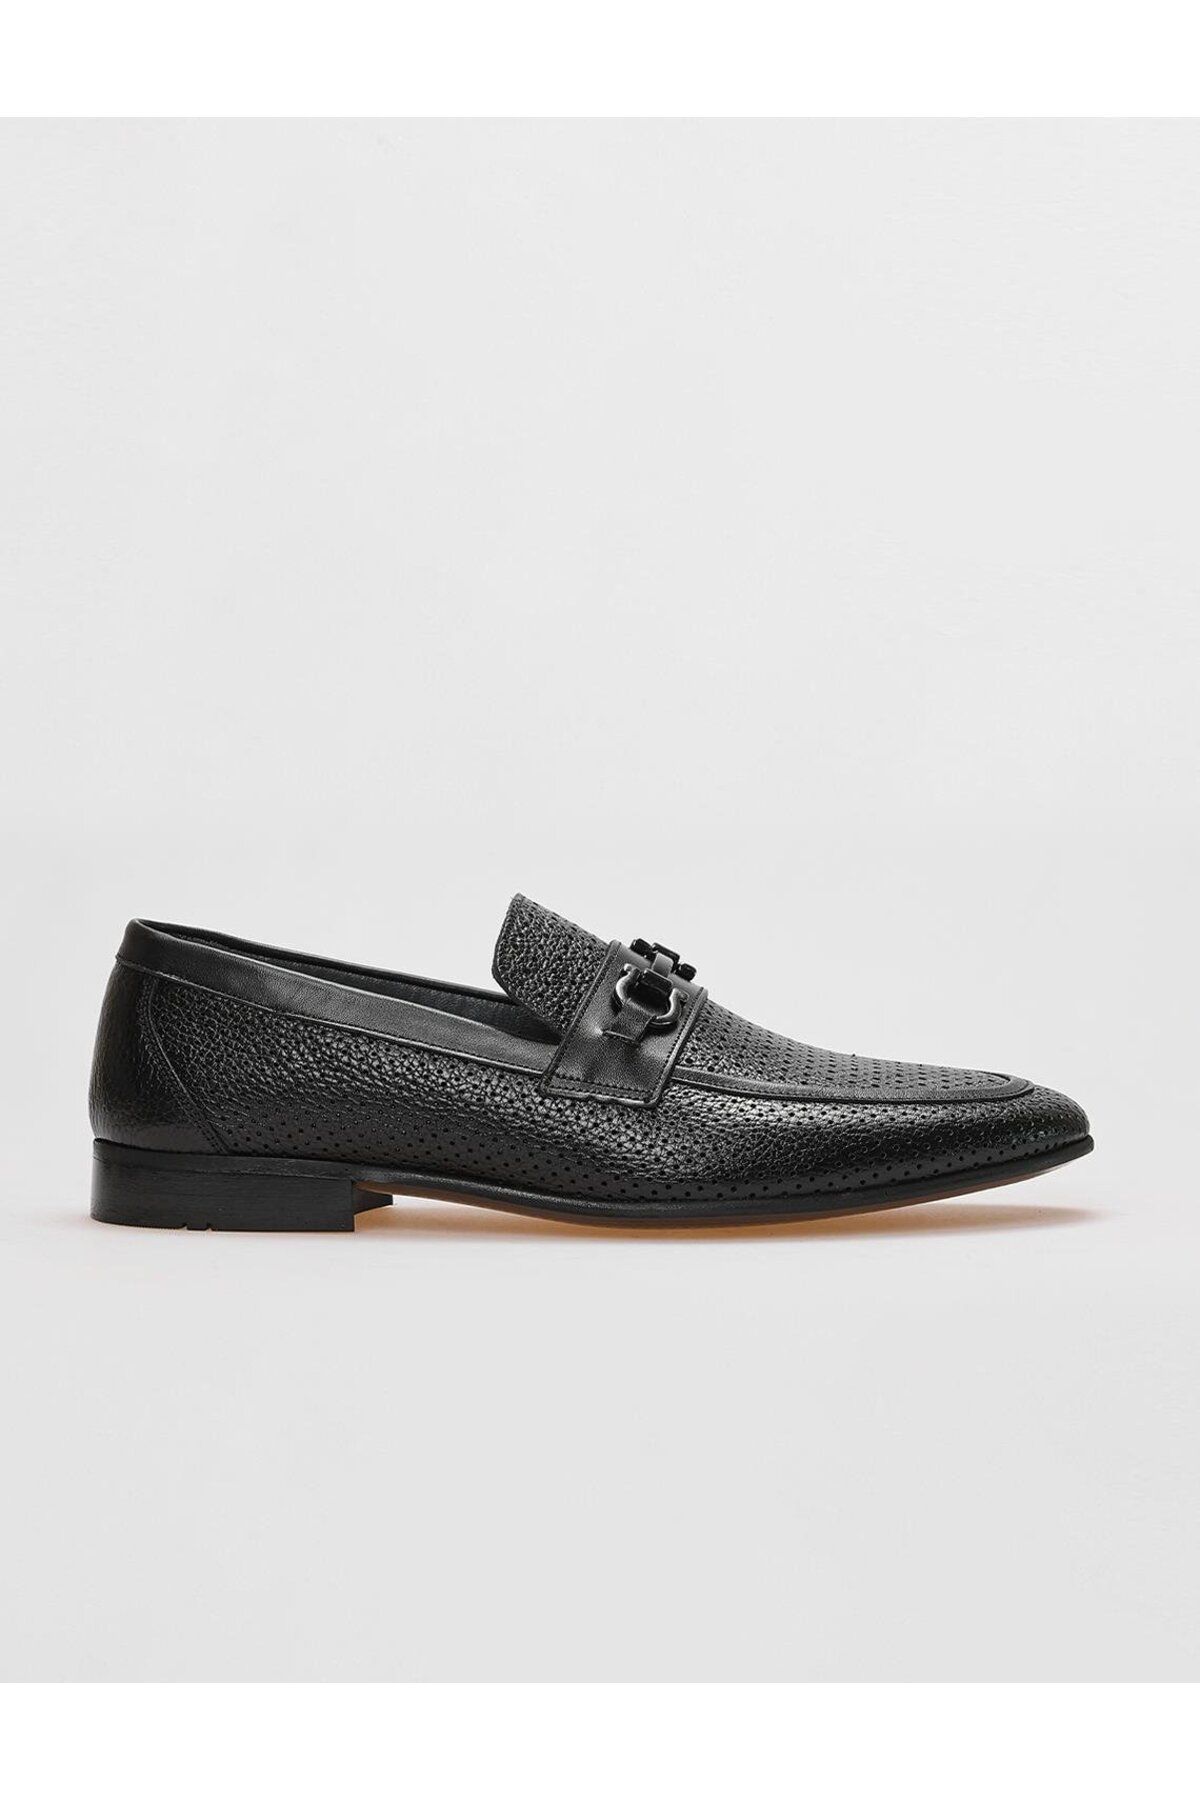 Cabani Hakiki Deri Siyah Tokalı Erkek Klasik Ayakkabı